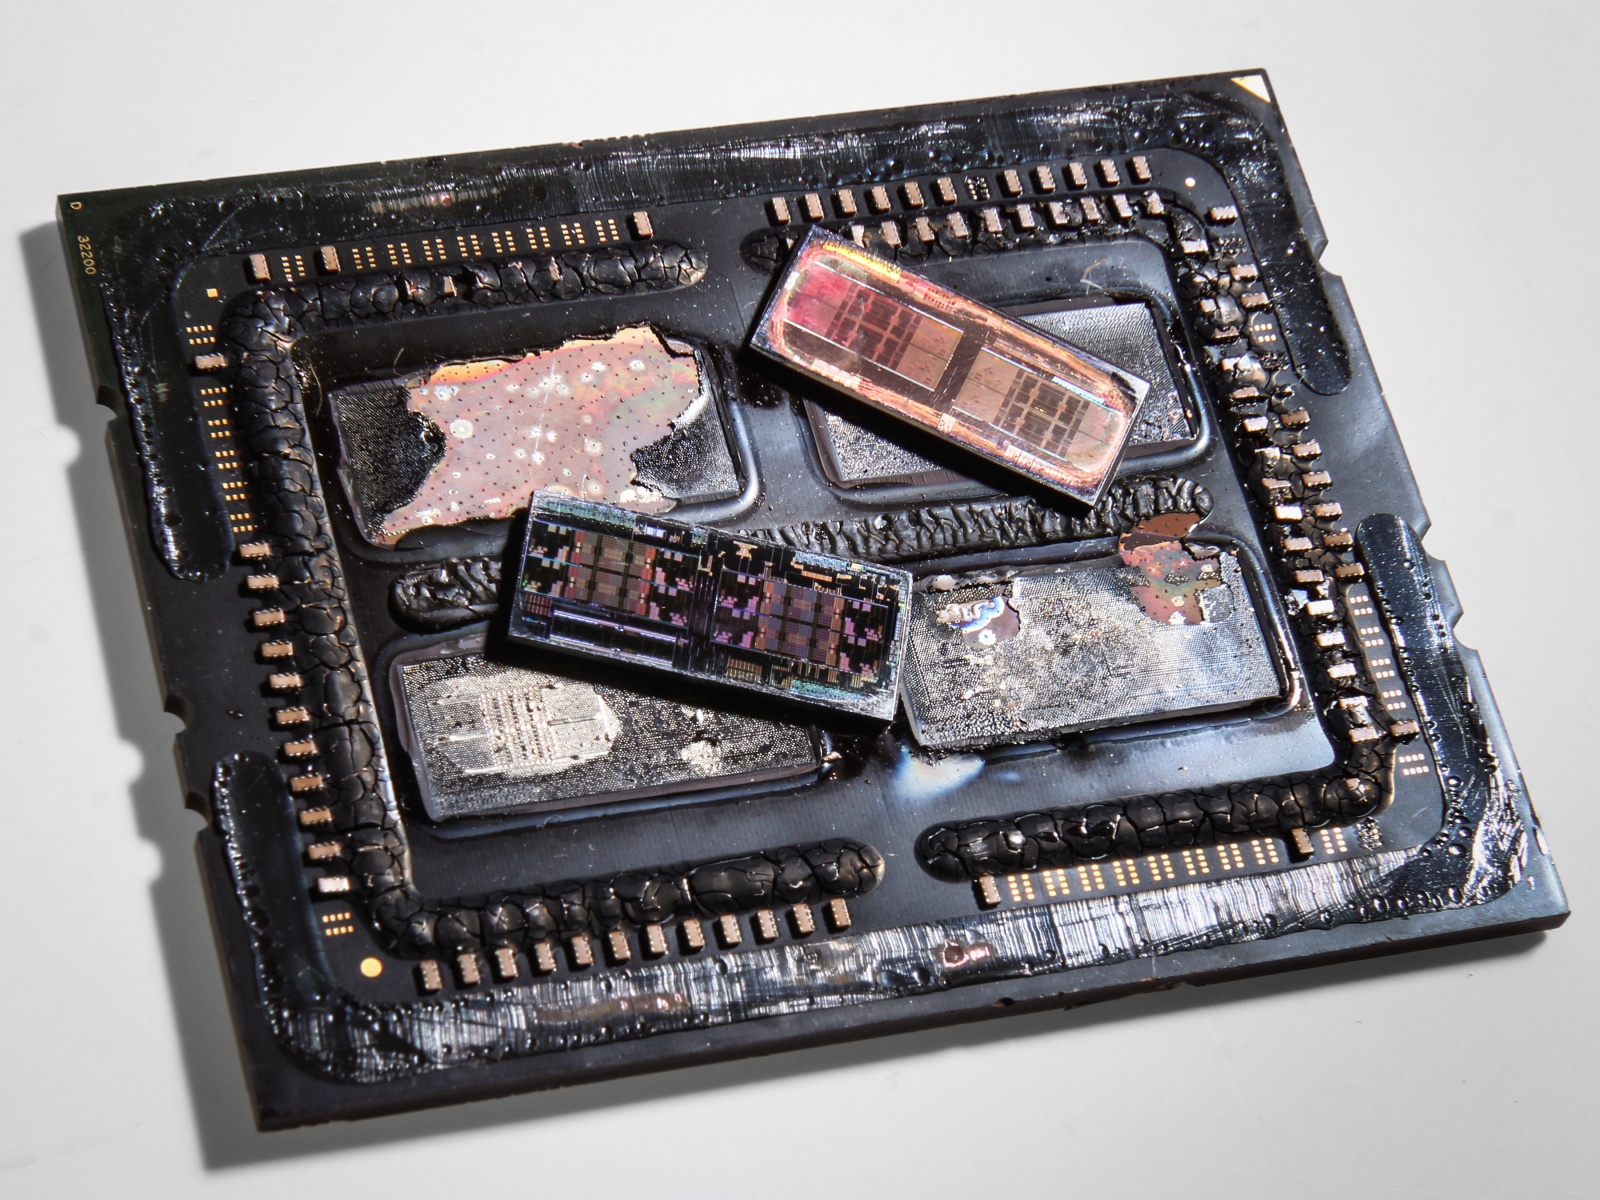 Системы в корпусе или Что на самом деле находится под крышкой корпуса микропроцессора - 1